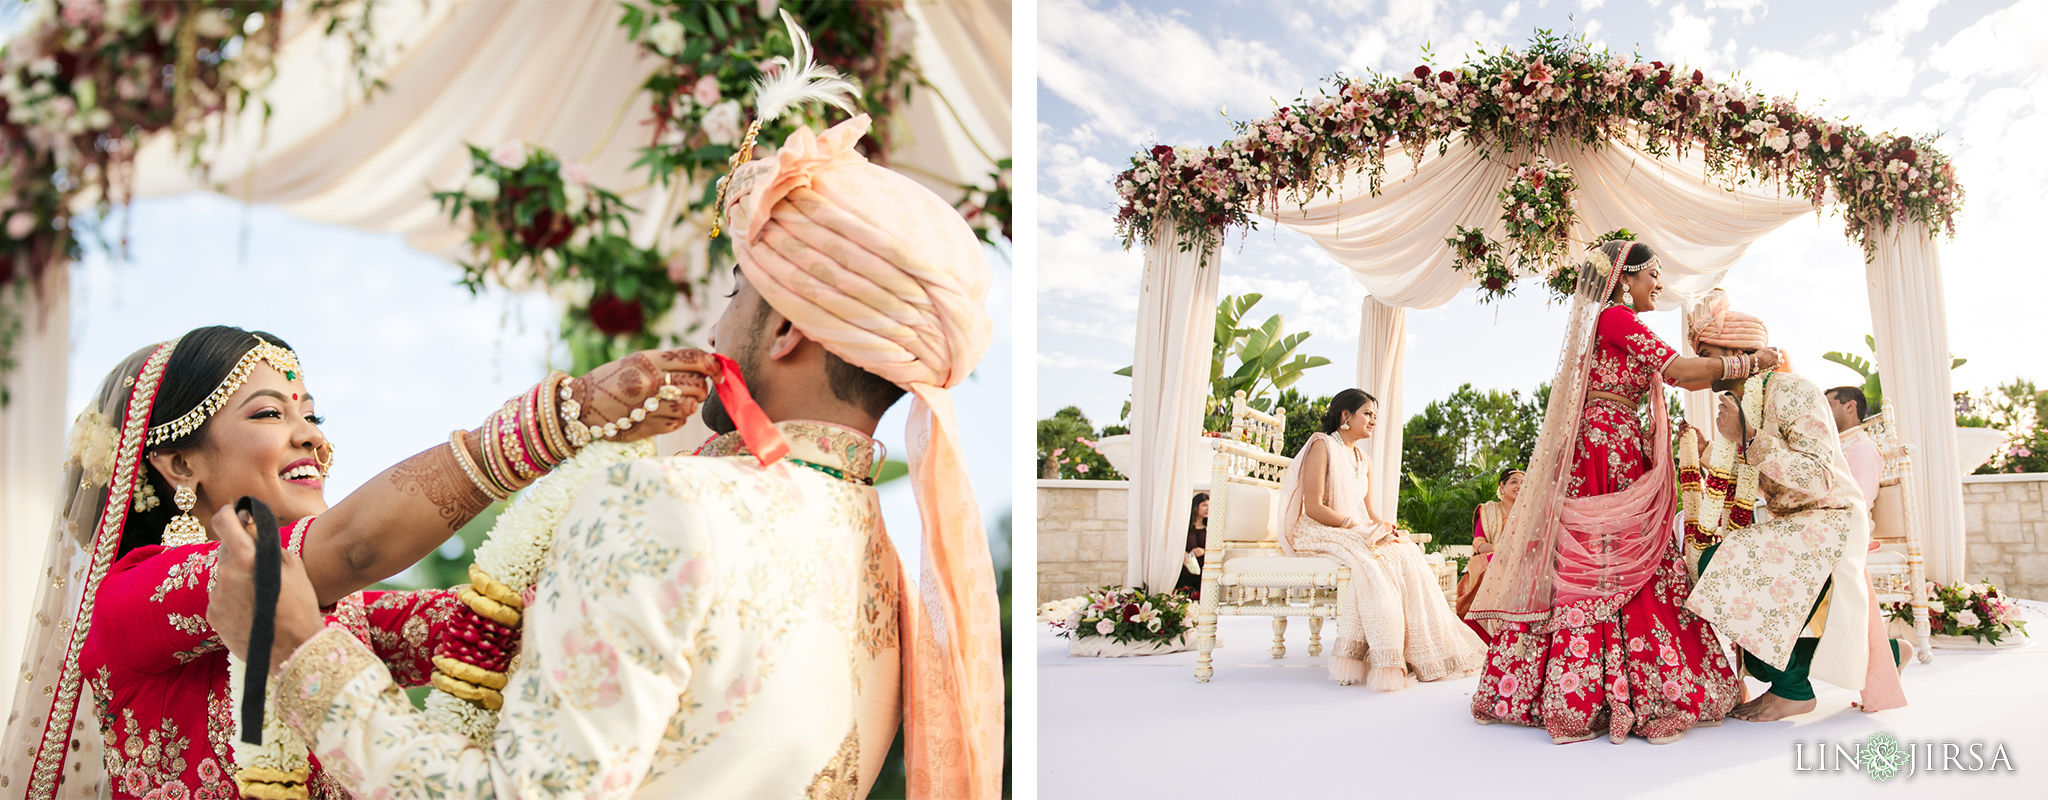 21 The Hilton Orlando Florida Indian Wedding Photography